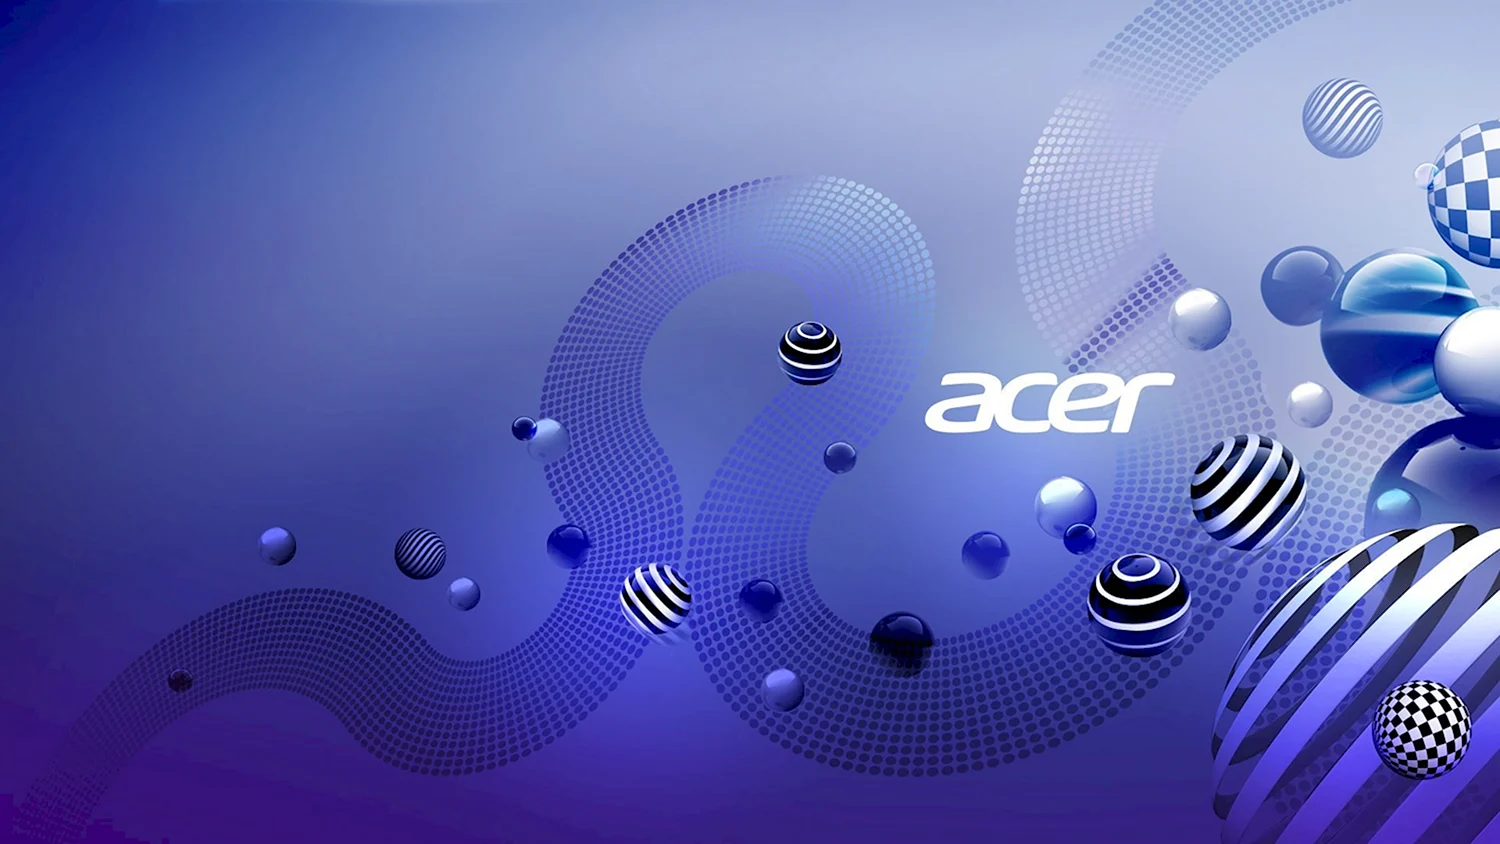 Обои для Acer Aspire v5